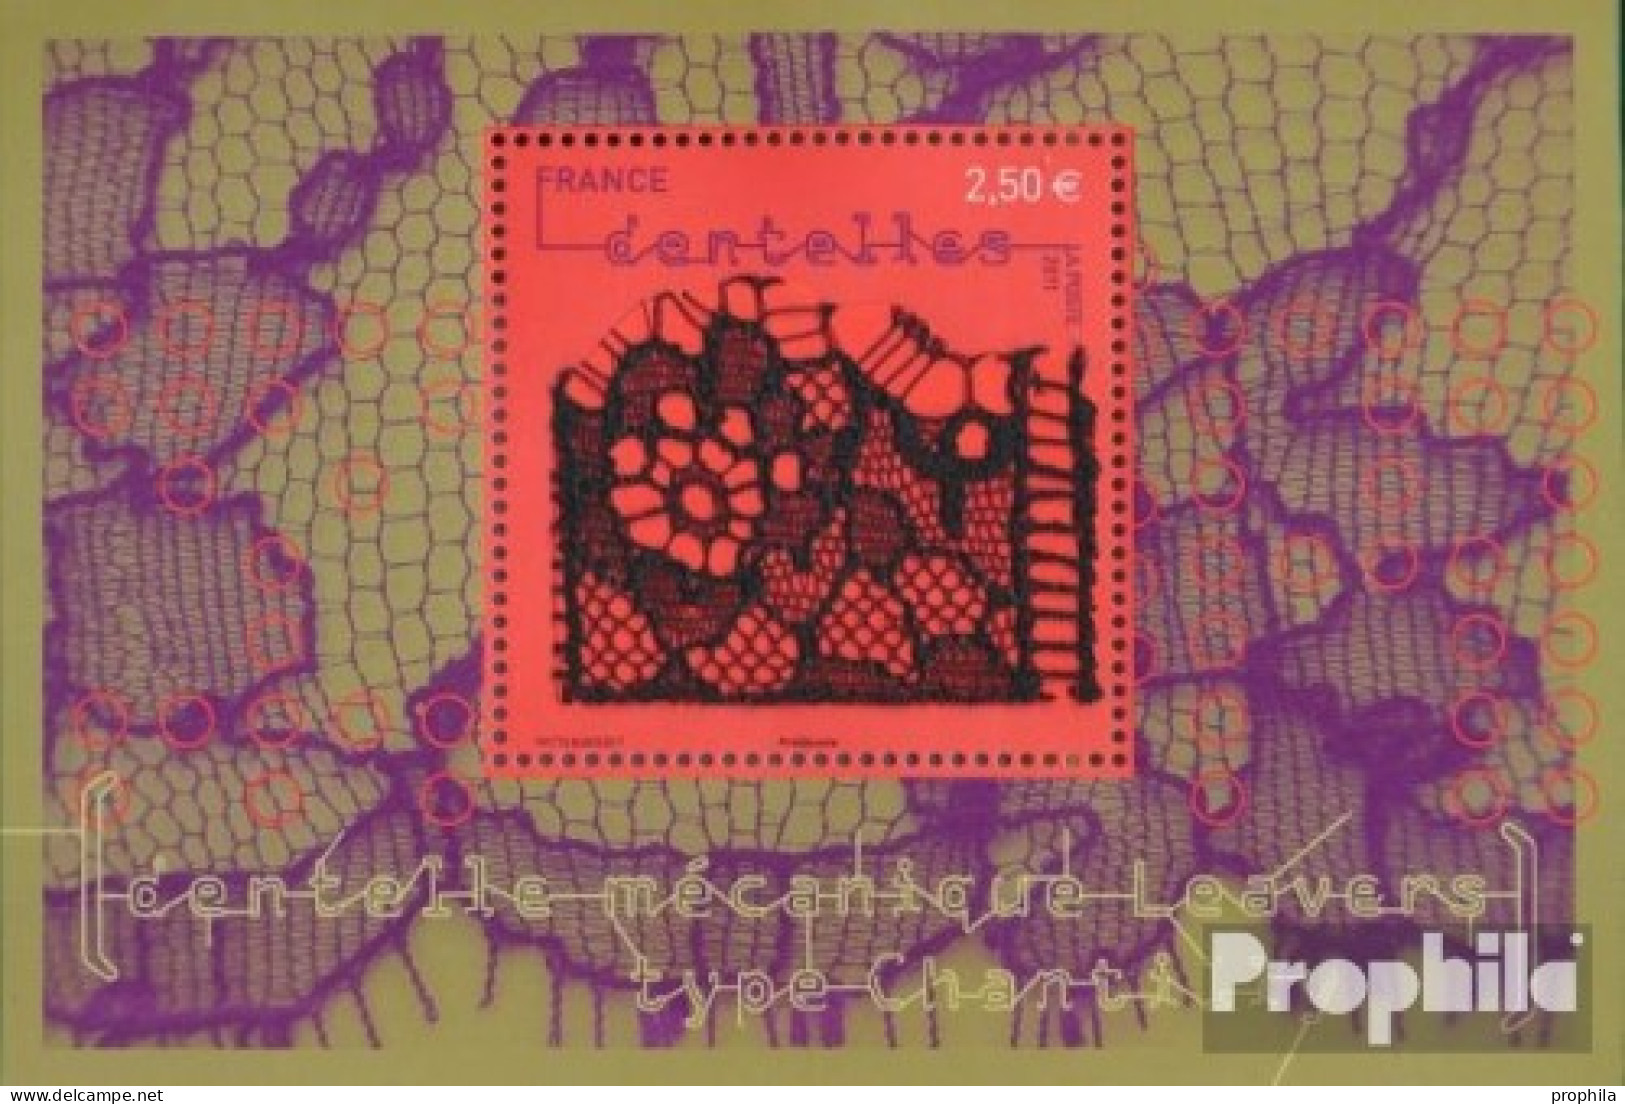 Frankreich Block163 (kompl.Ausg.) Postfrisch 2011 Spitzenstickerei - Unused Stamps